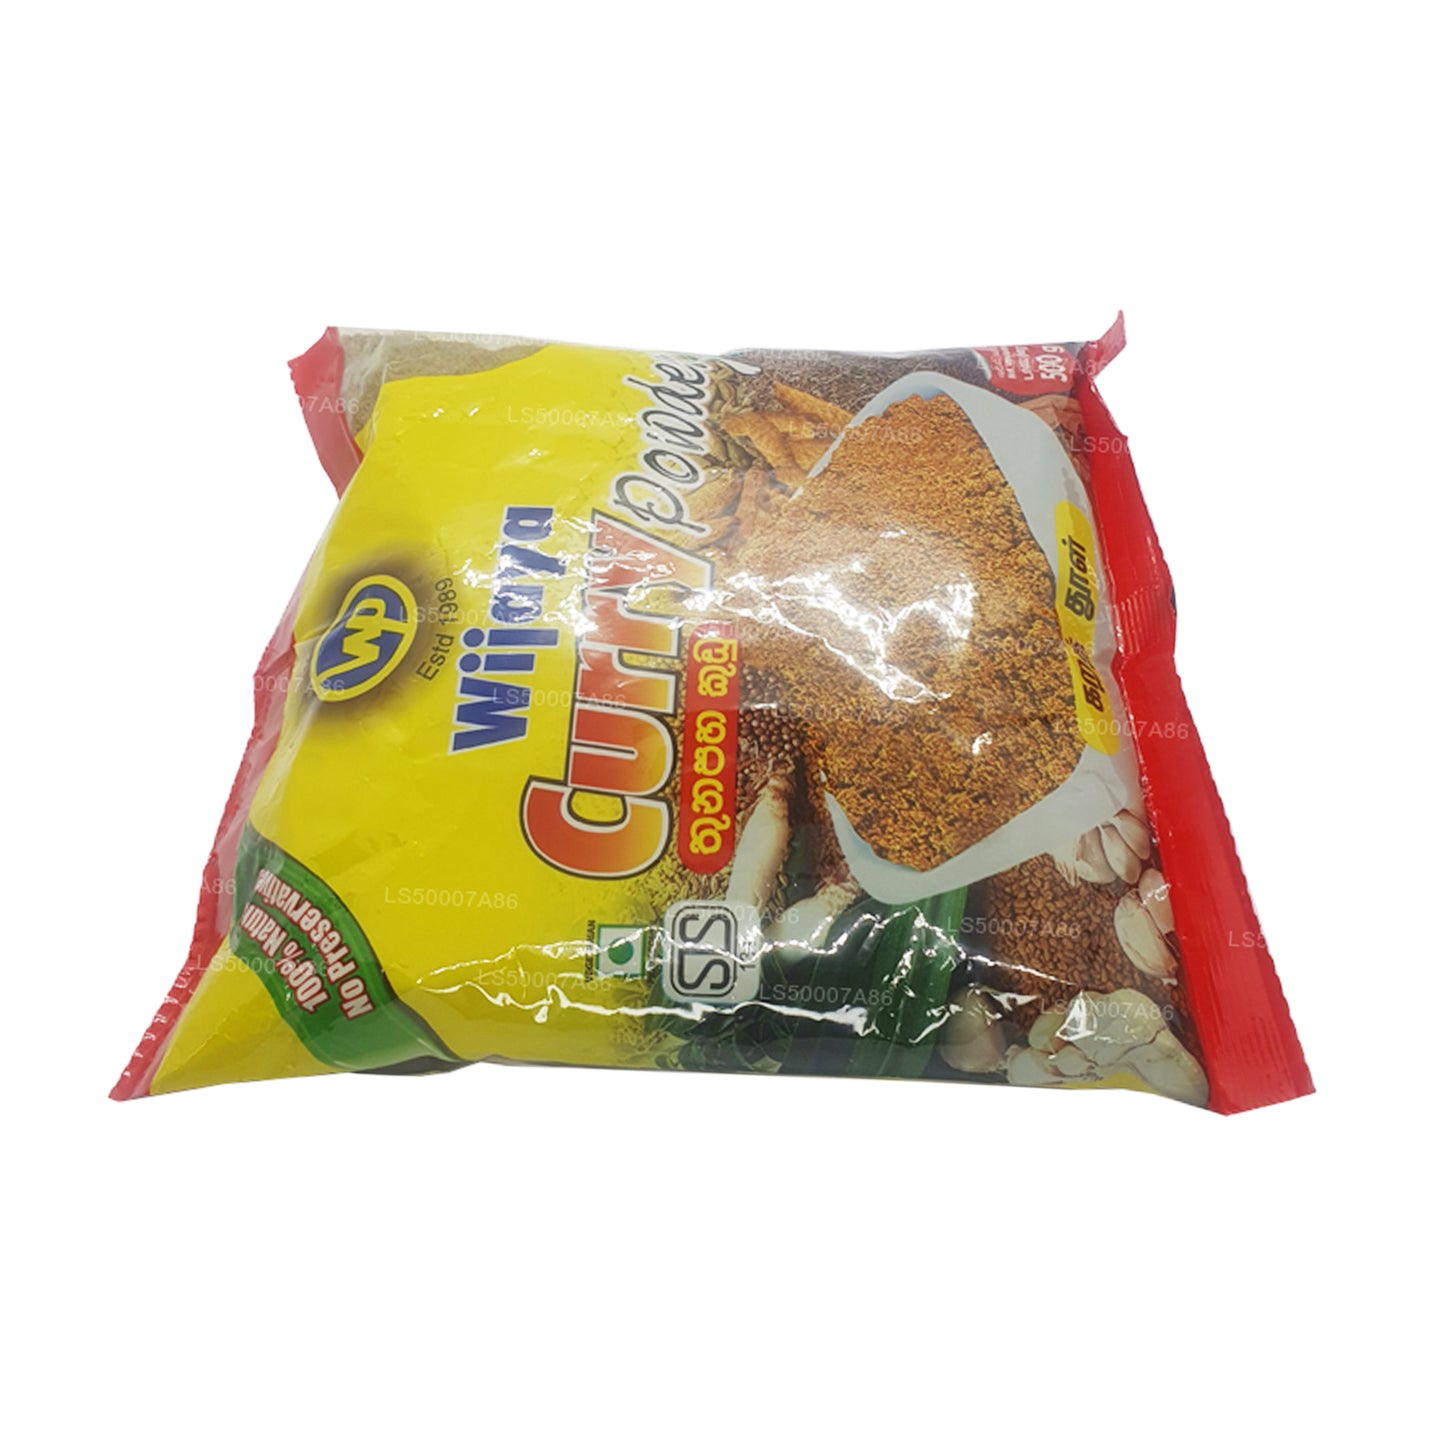 Wijaya Curry Powder (500g)